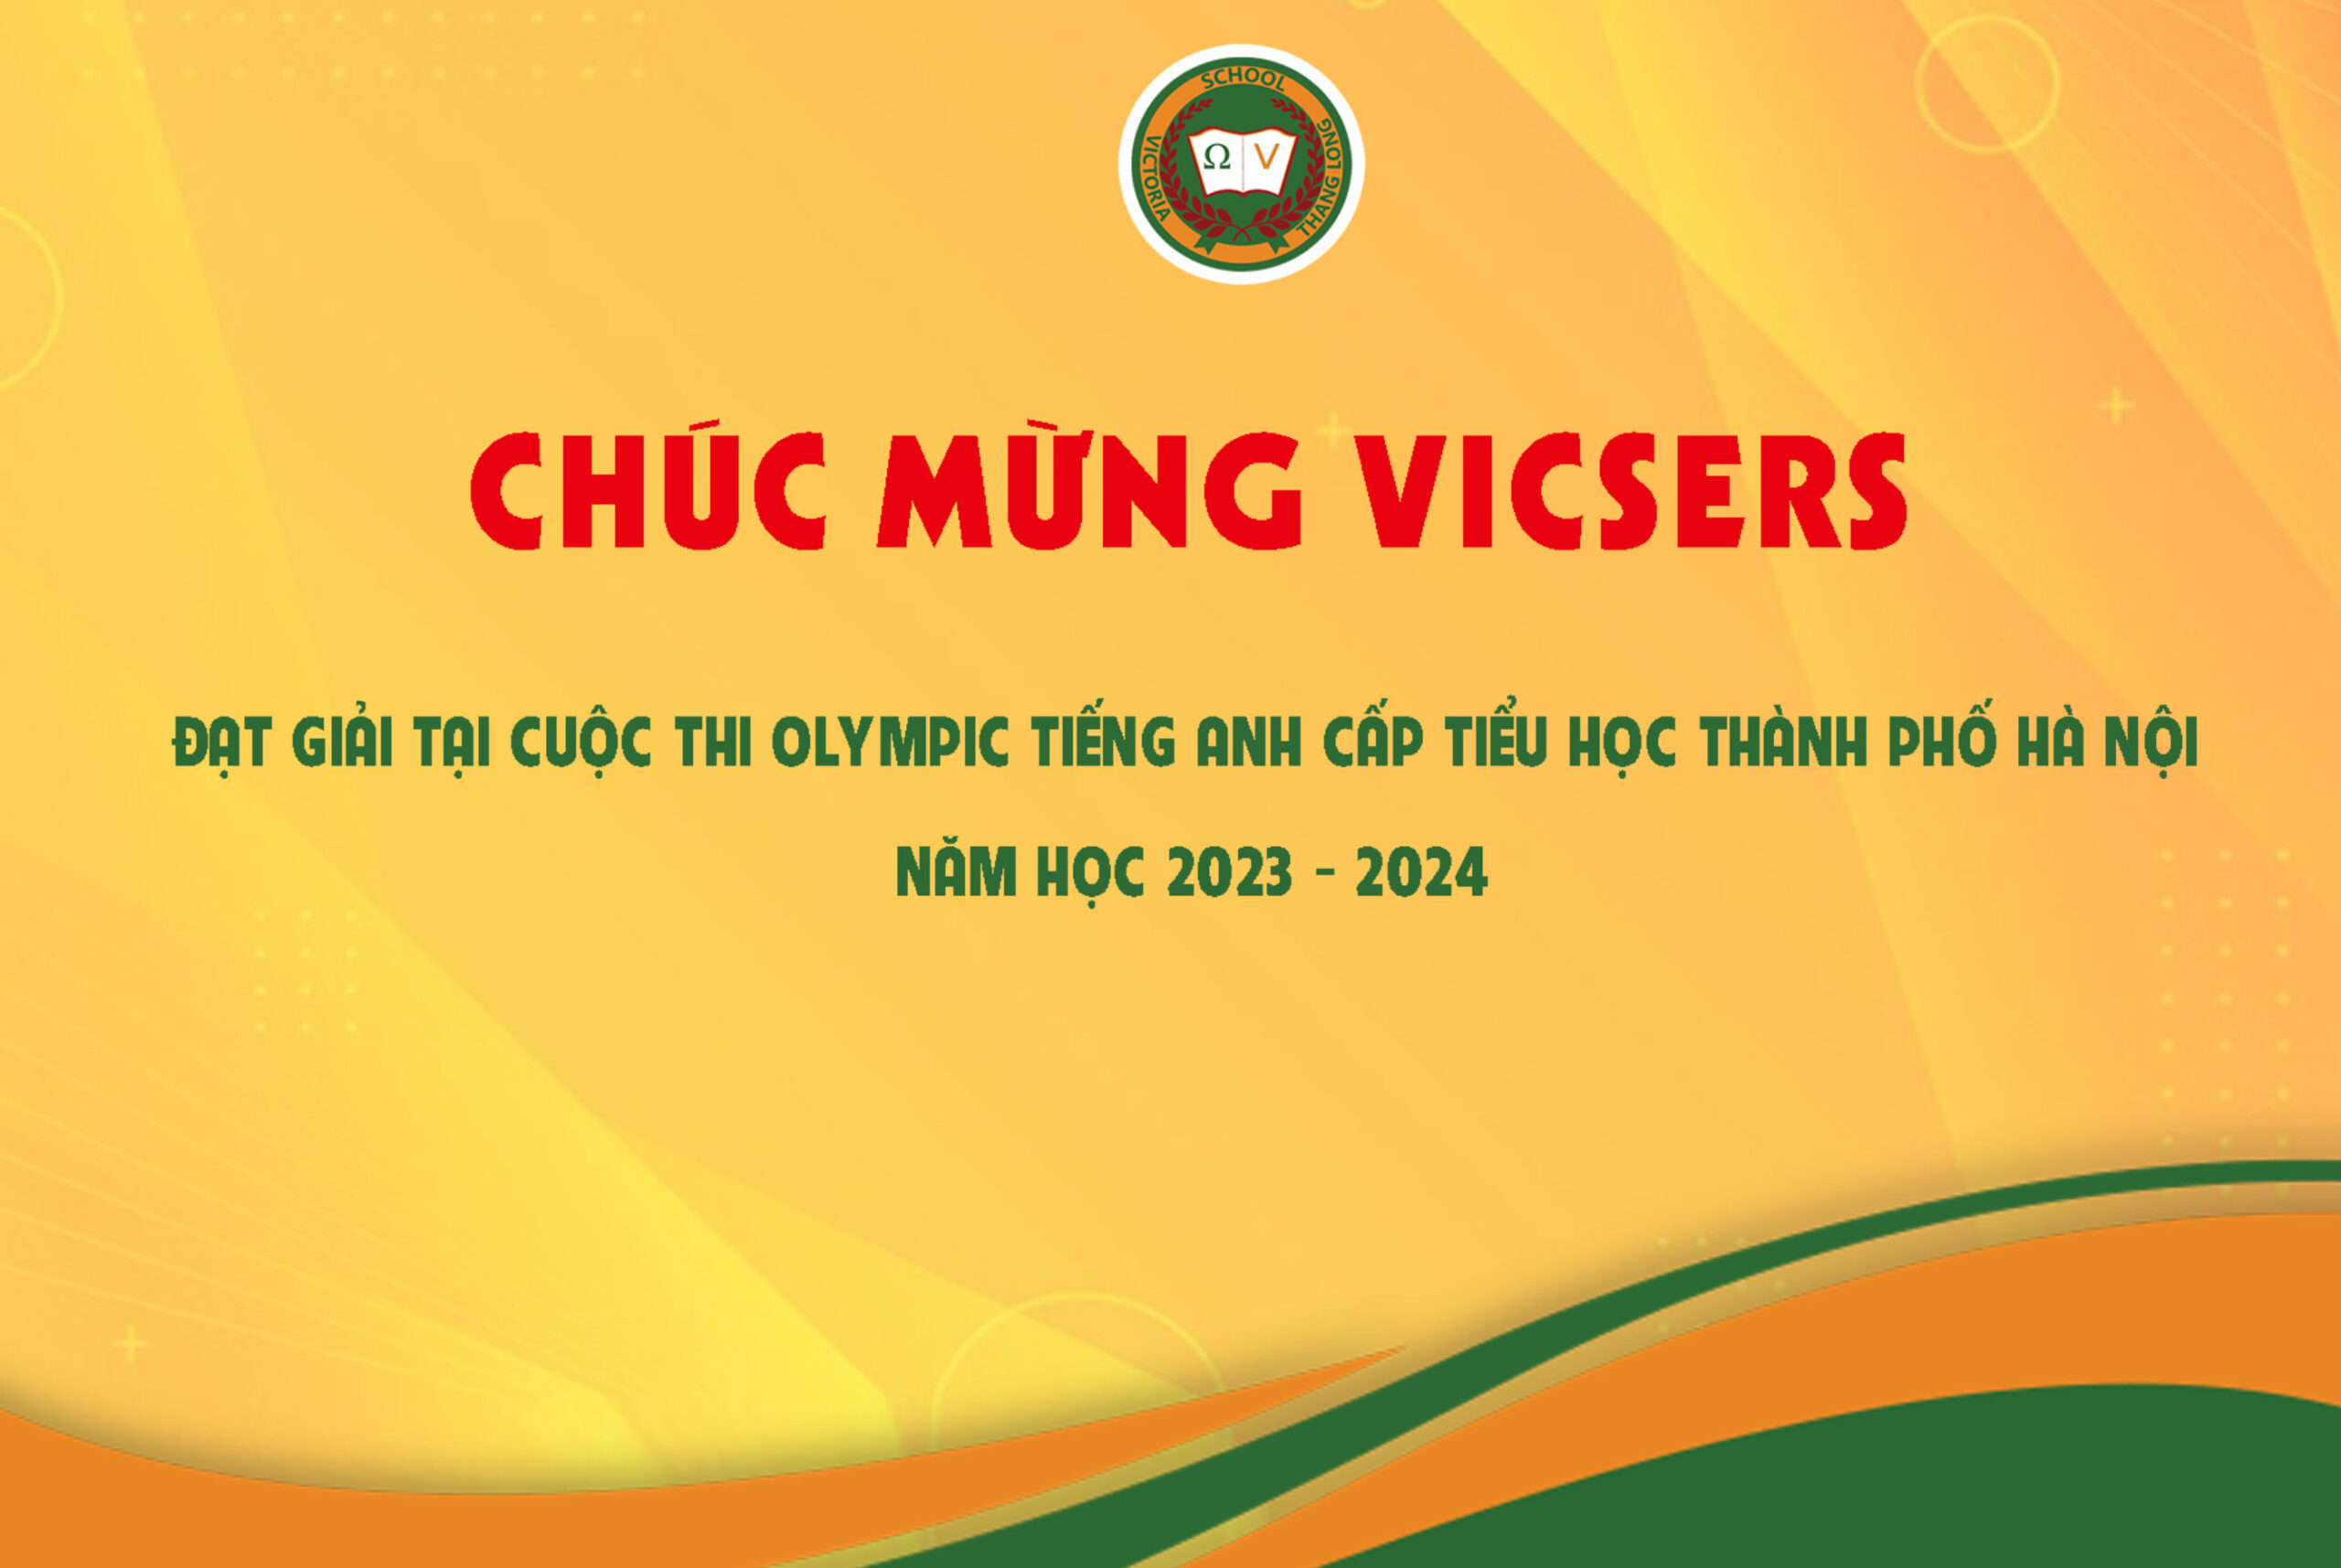 CHÚC MỪNG VICSERS ĐÃ CHINH PHỤC THÀNH CÔNG ĐỈNH NÚI OLYMPIC TIẾNG ANH TIỂU HỌC CẤP THÀNH PHỐ